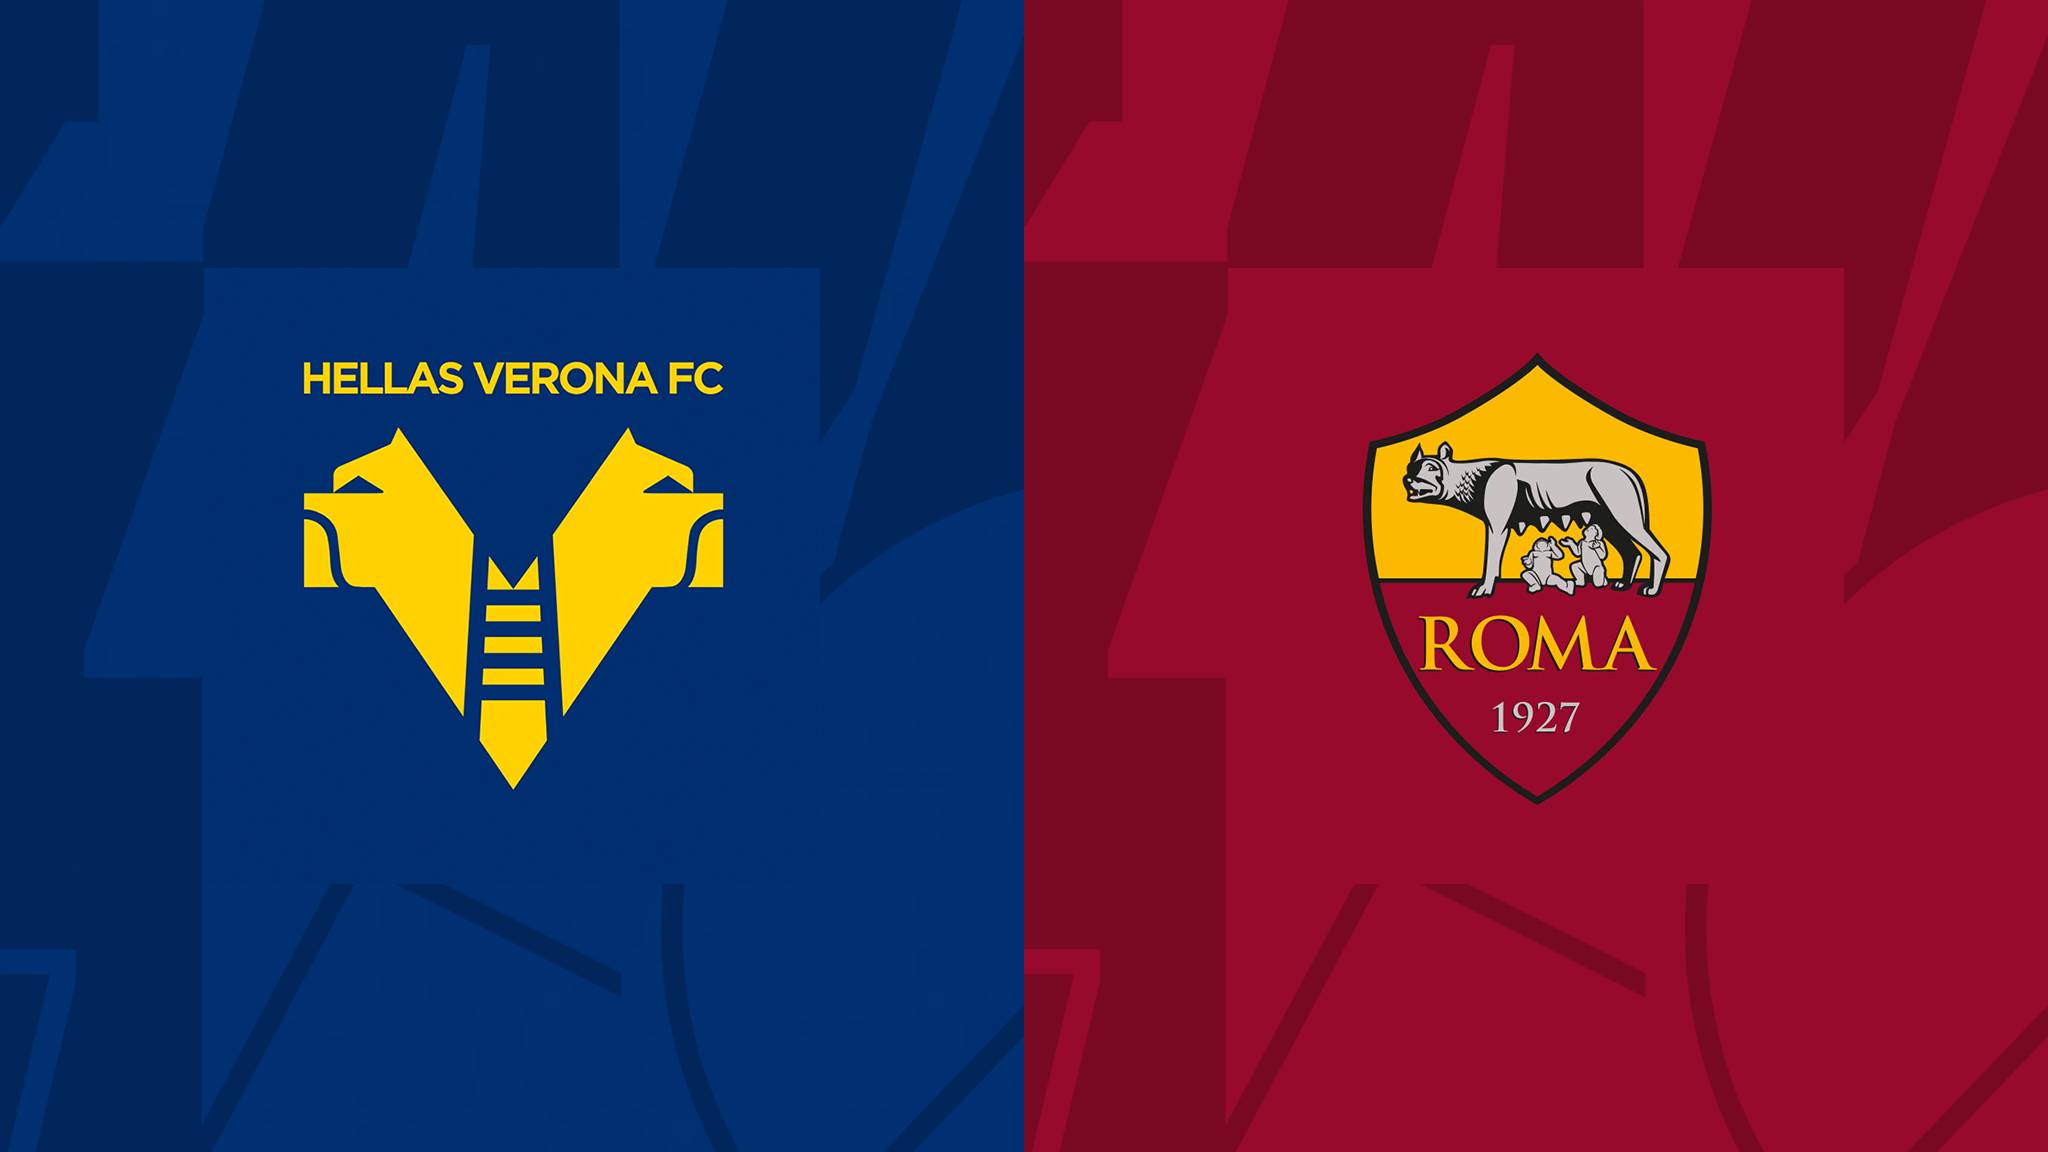 مشاهدة مباراة روما و هيلاس فيرونا بث مباشر 31/10/2022 Hellas Verona vs Roma